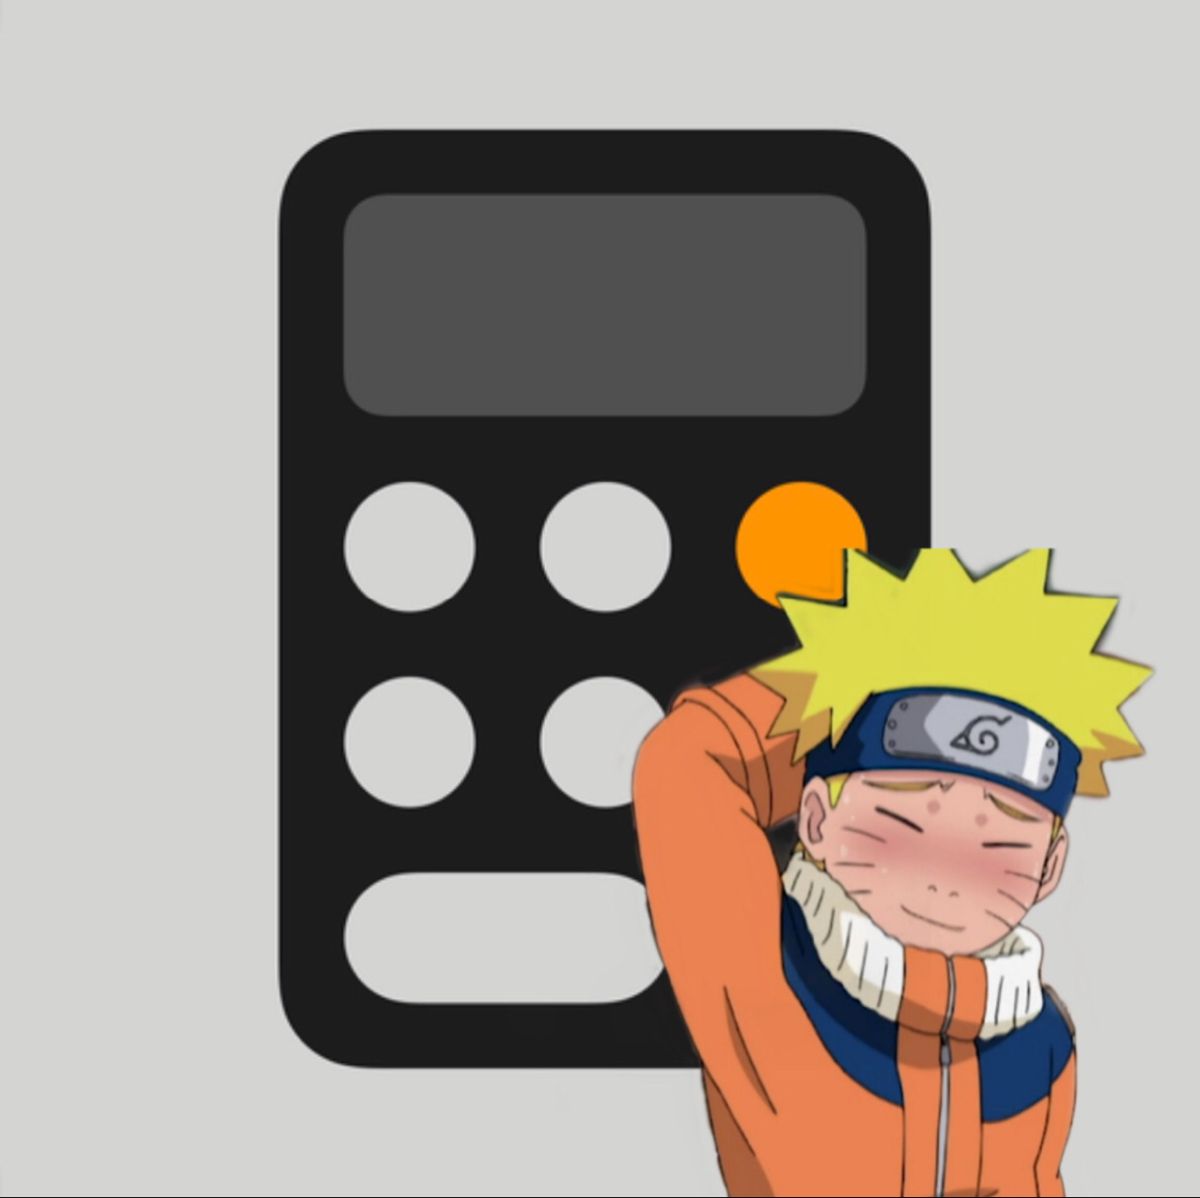 Naruto anime app icon iconos para las aplicaciones iconos de word logo anime